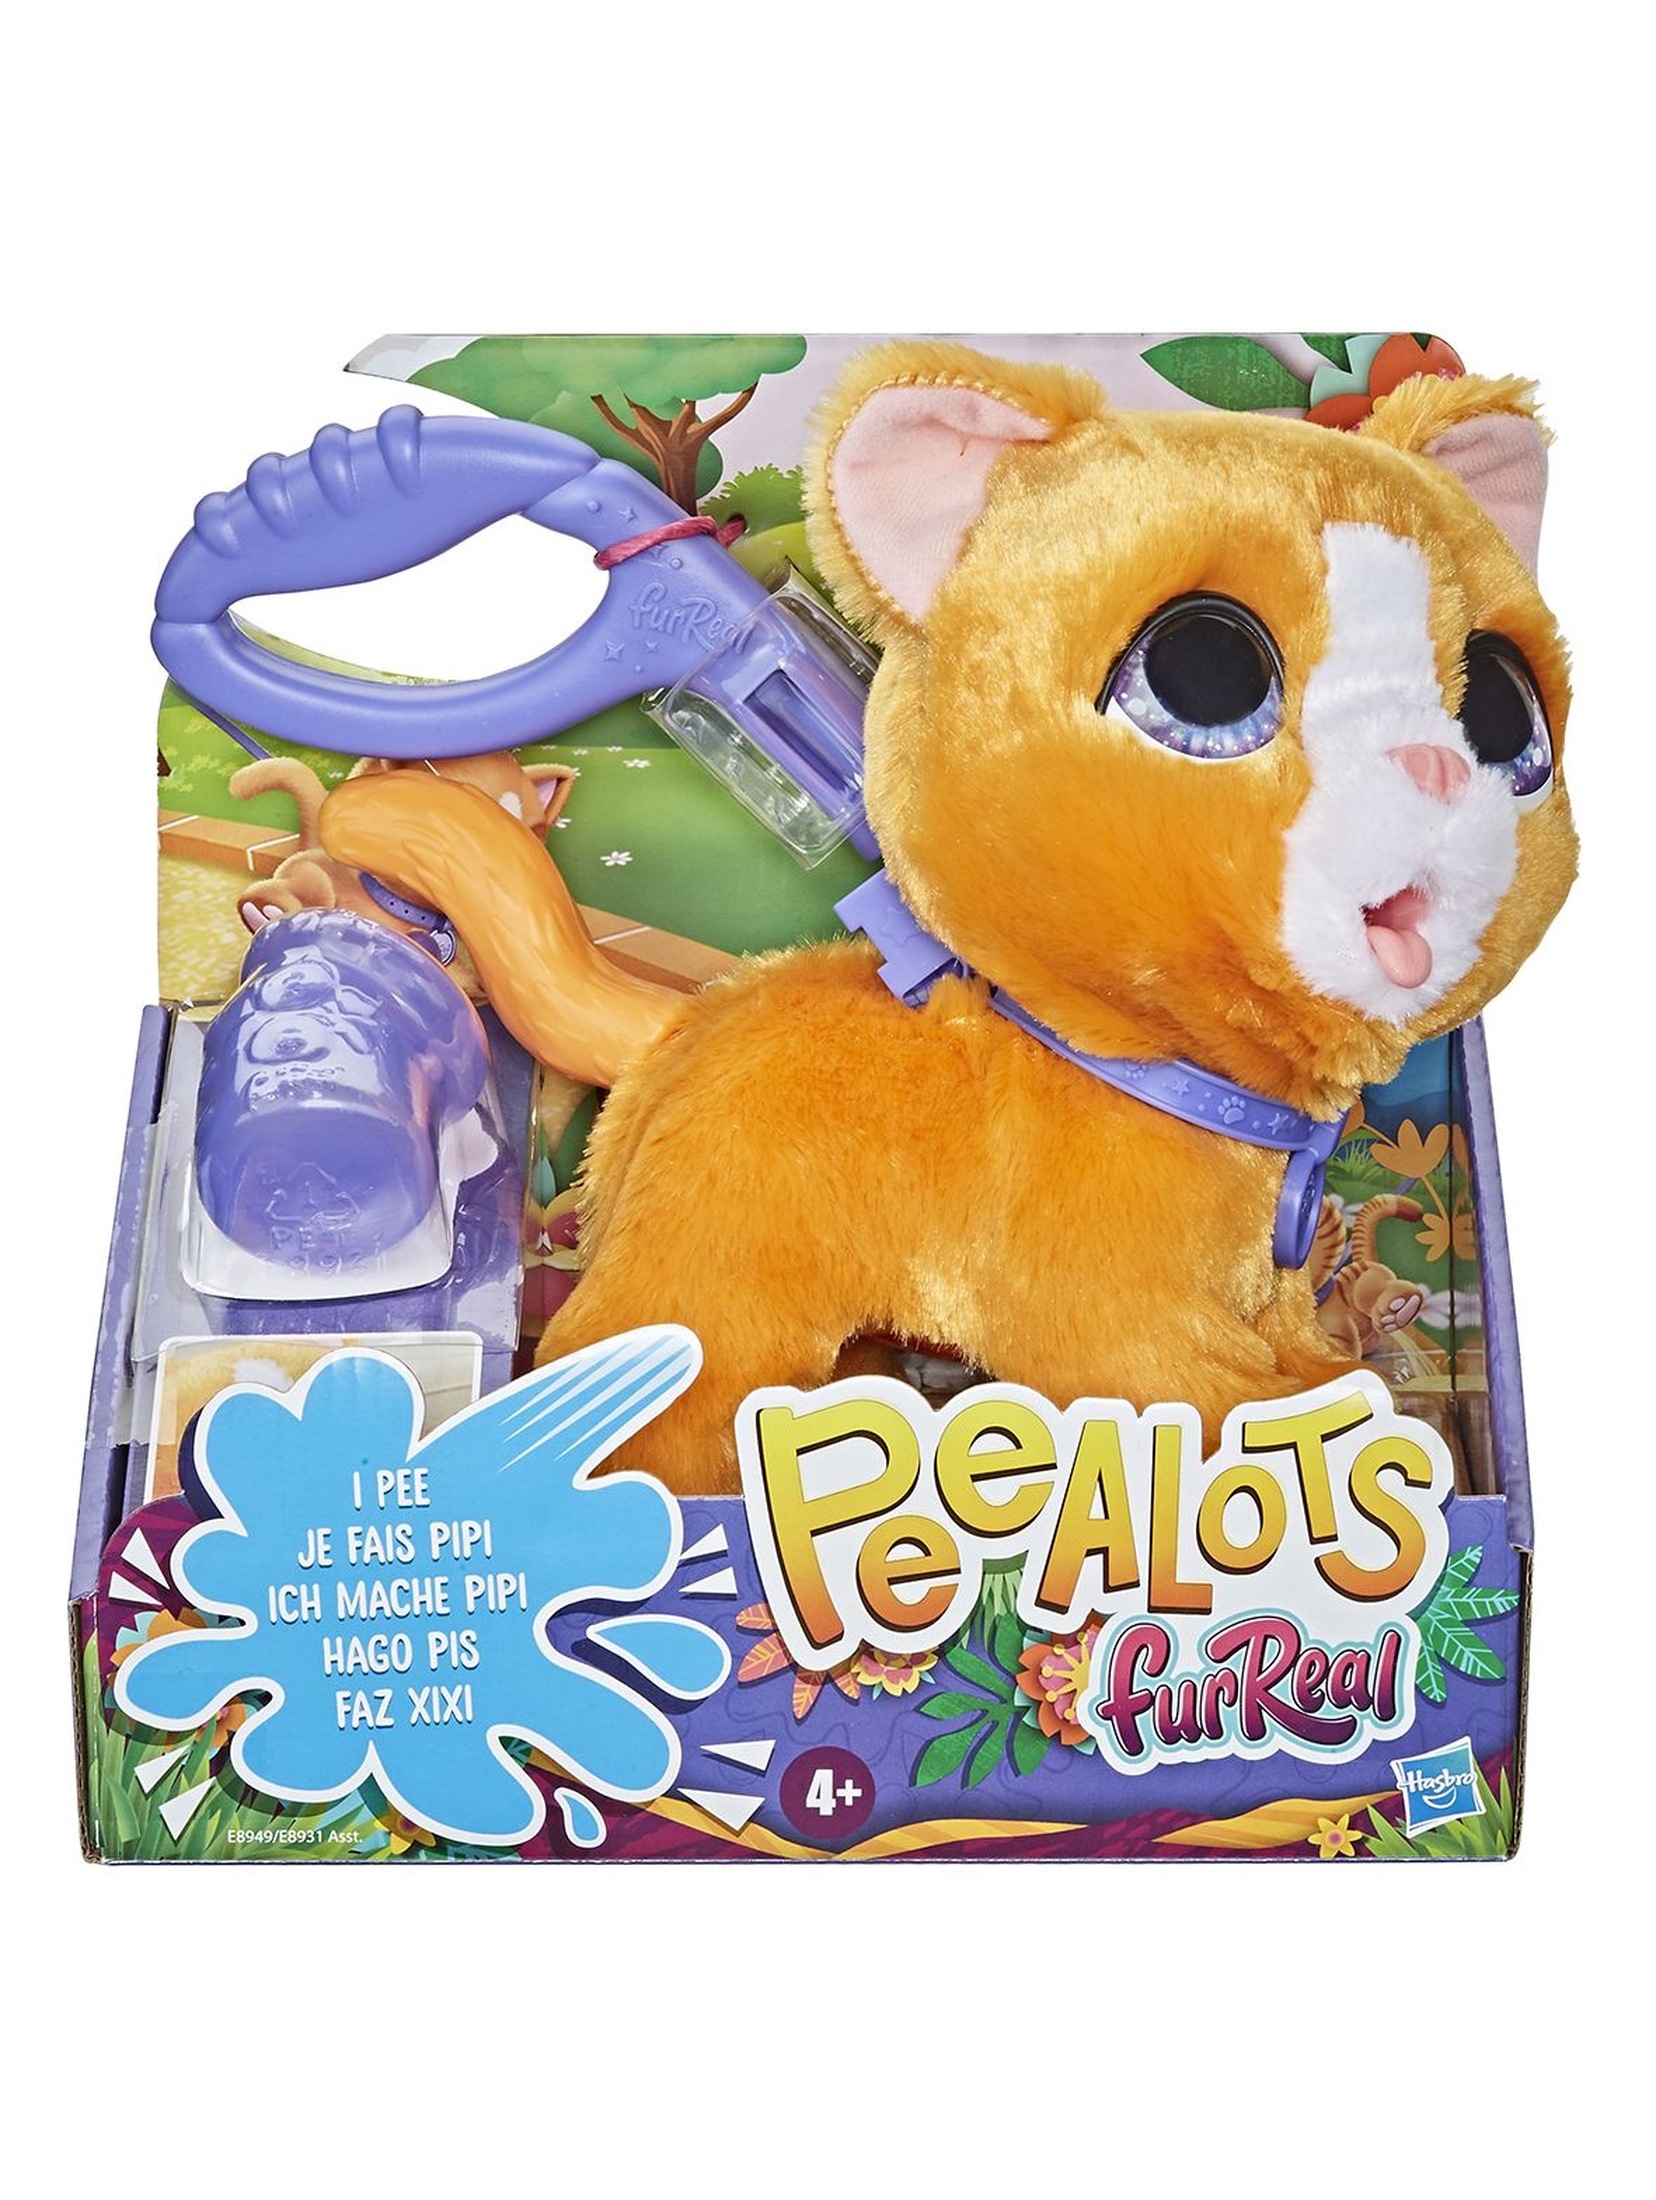 Furreal Peealots kot - zwierzaki na smyczy 4+